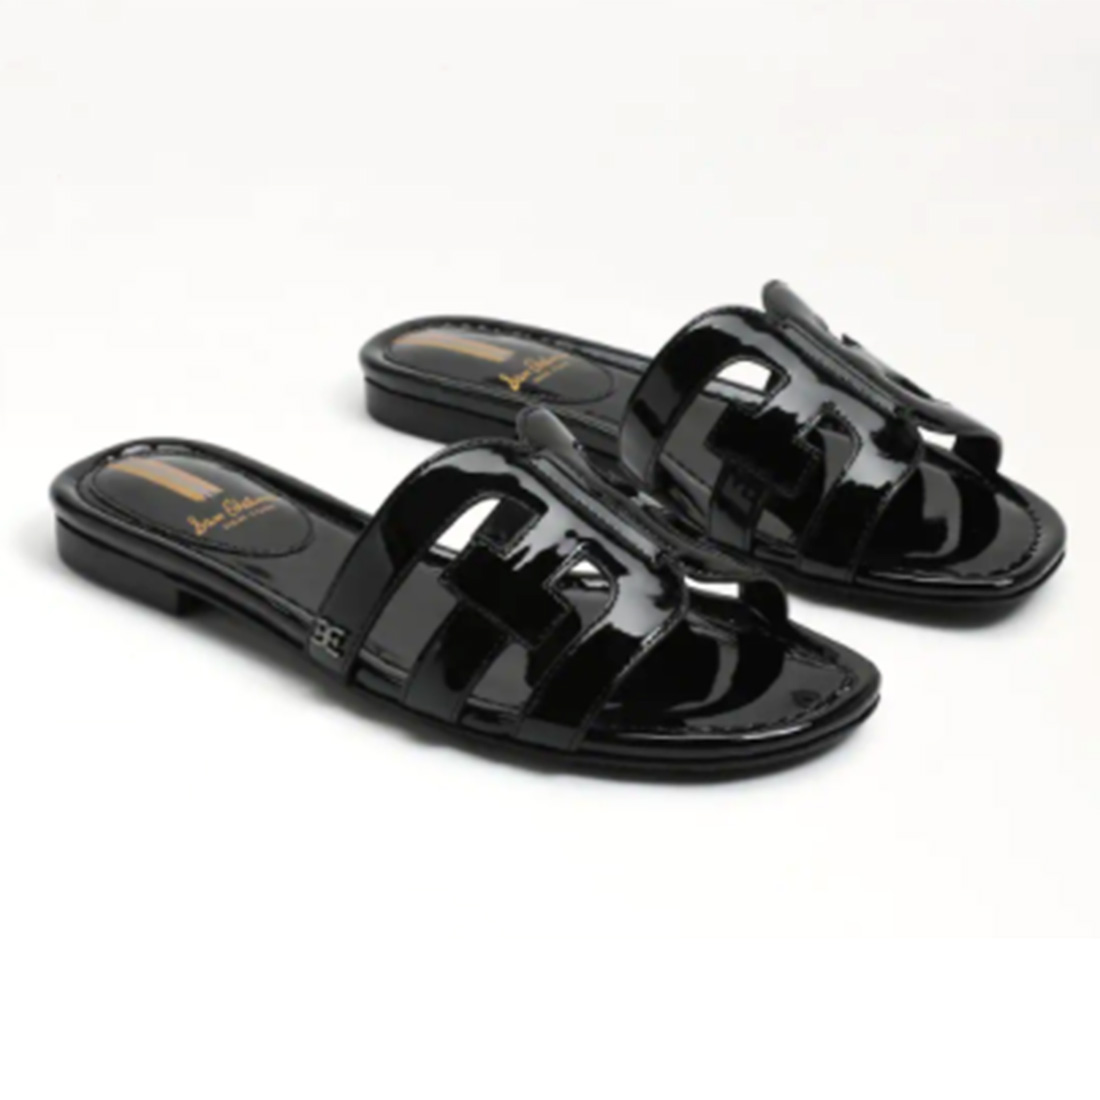 sam edelman bay sandal in black patent 106761